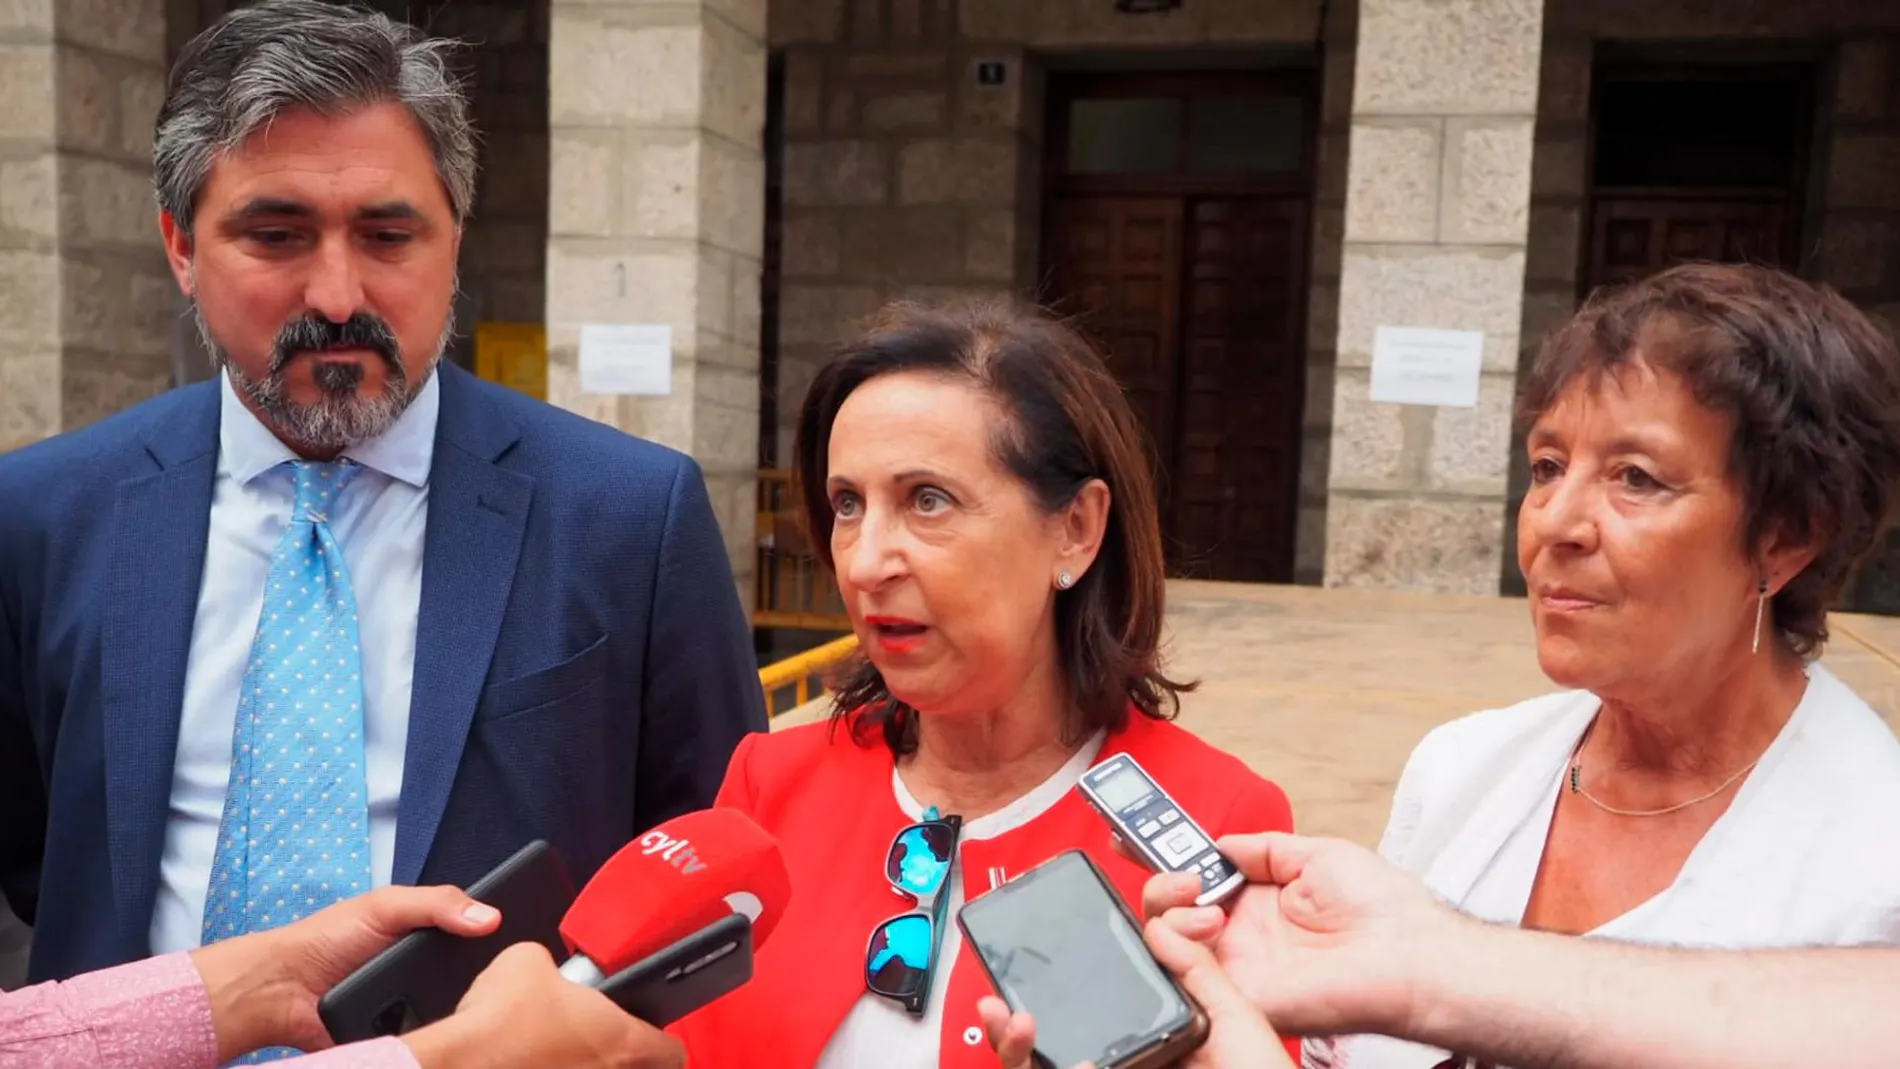 La ministra de Defensa, Margarita Robles, visita a los ayuntamientos de Gavilanes y Pedro Bernardo acompañada de la delegada de Gobierno, Mercedes Martín